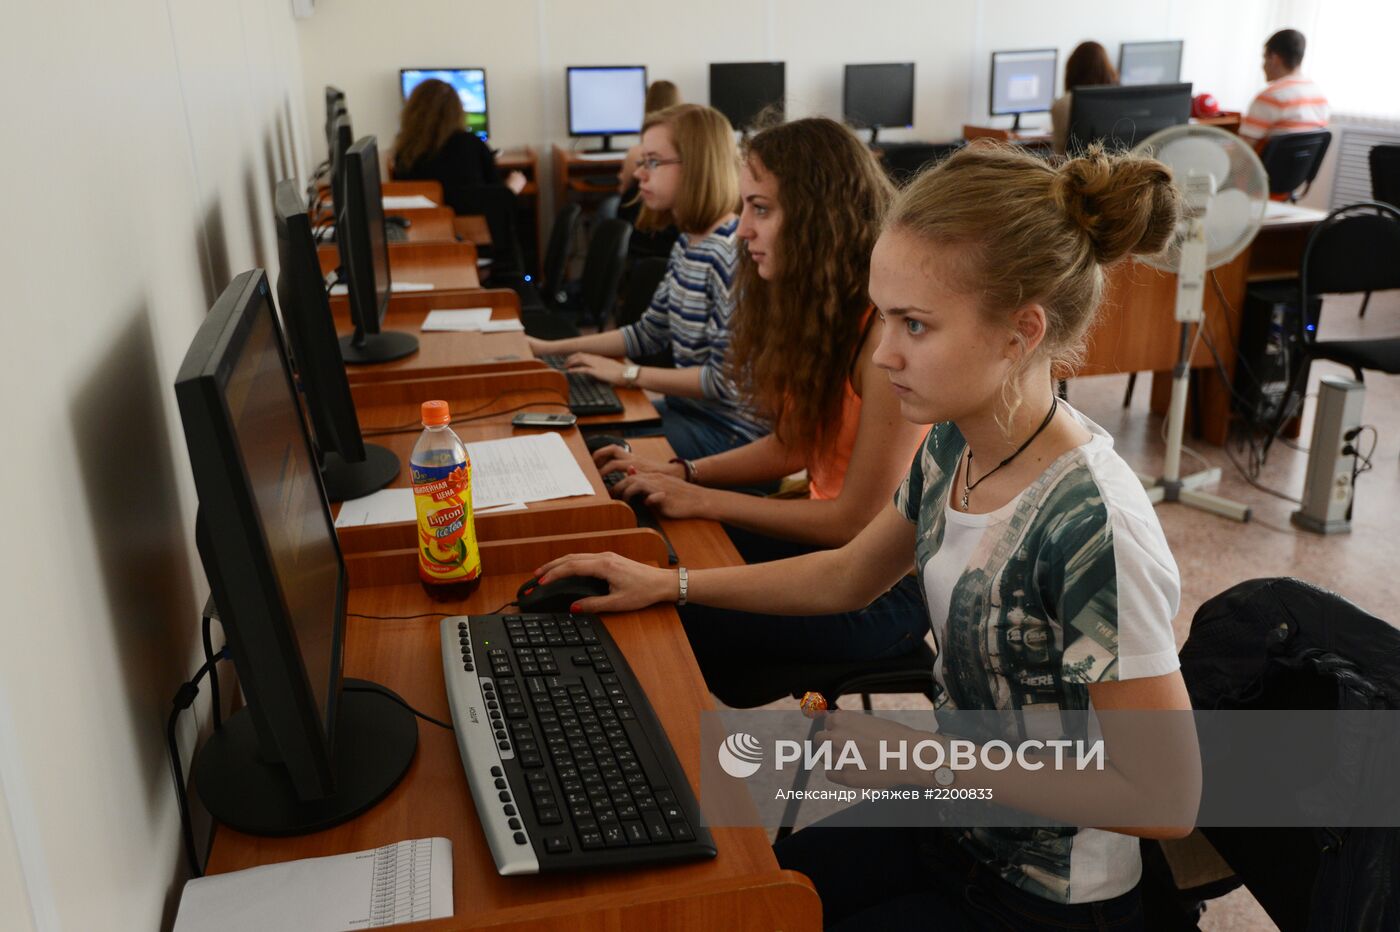 Обработка результатов ЕГЭ в Новосибирске